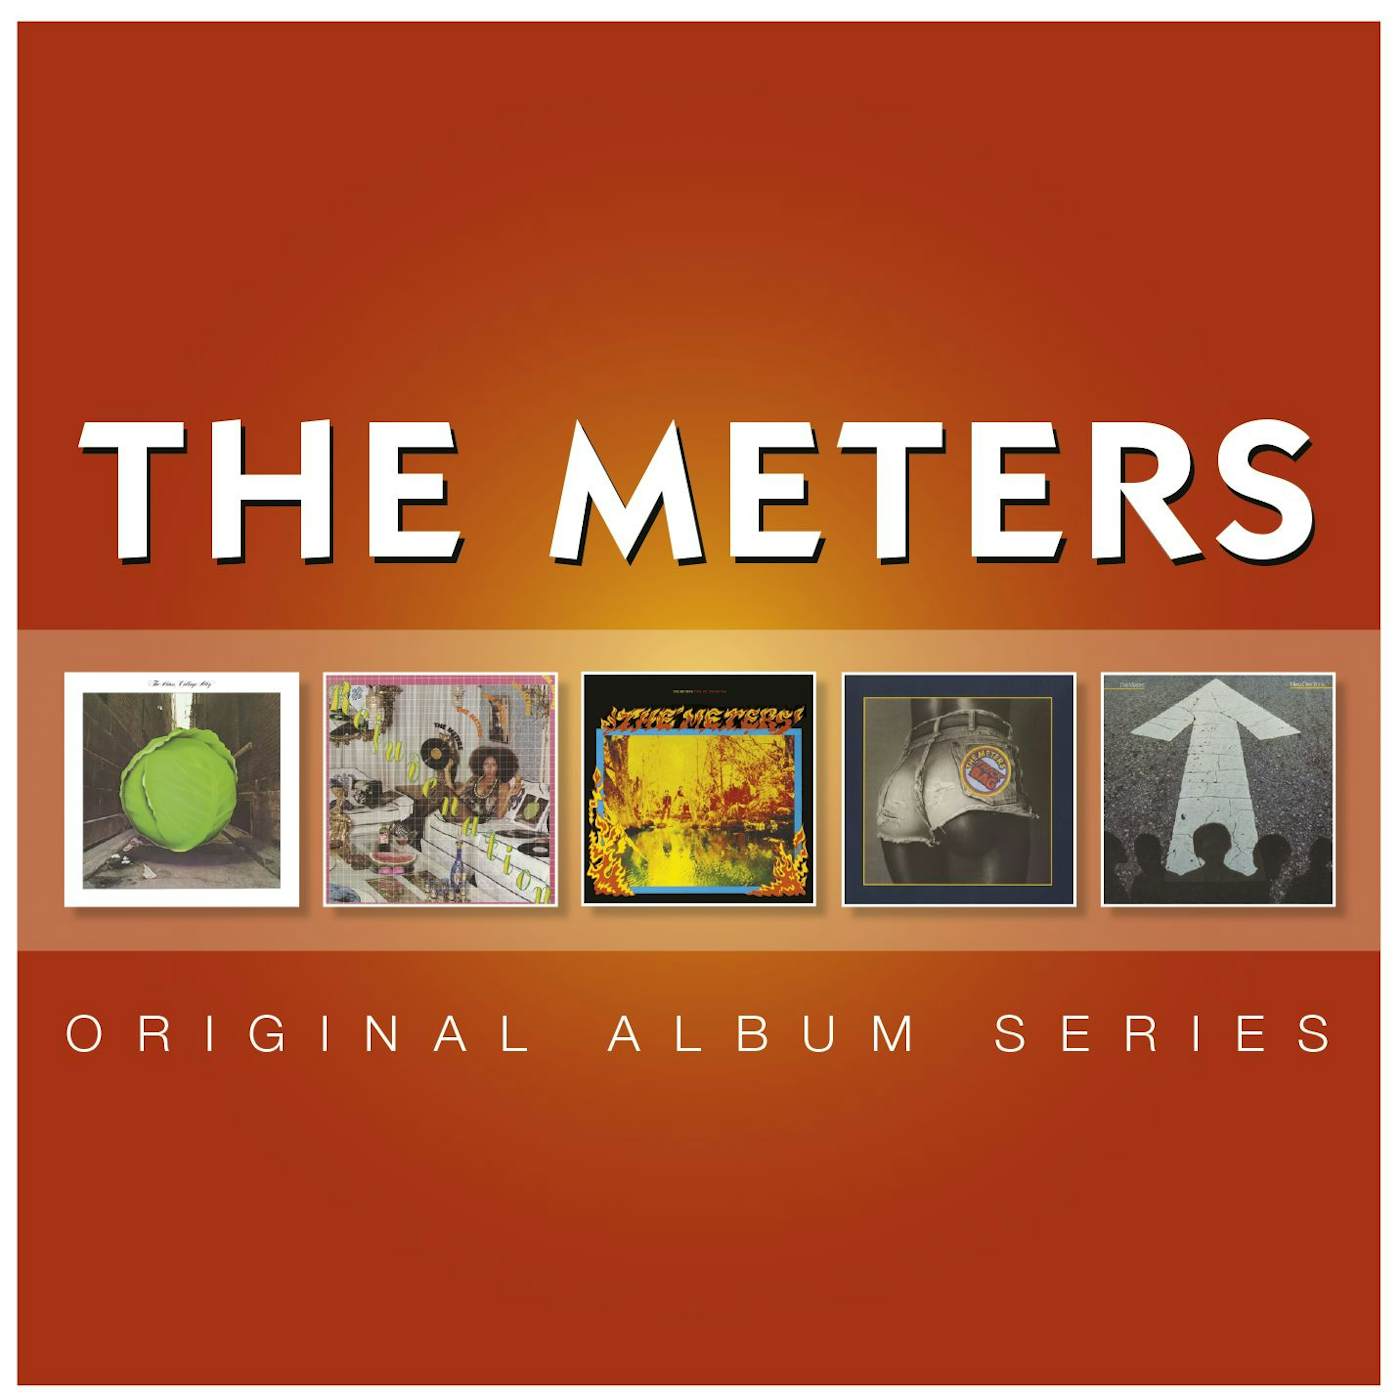 The Meters Original Album Series (5 CD) Box Set